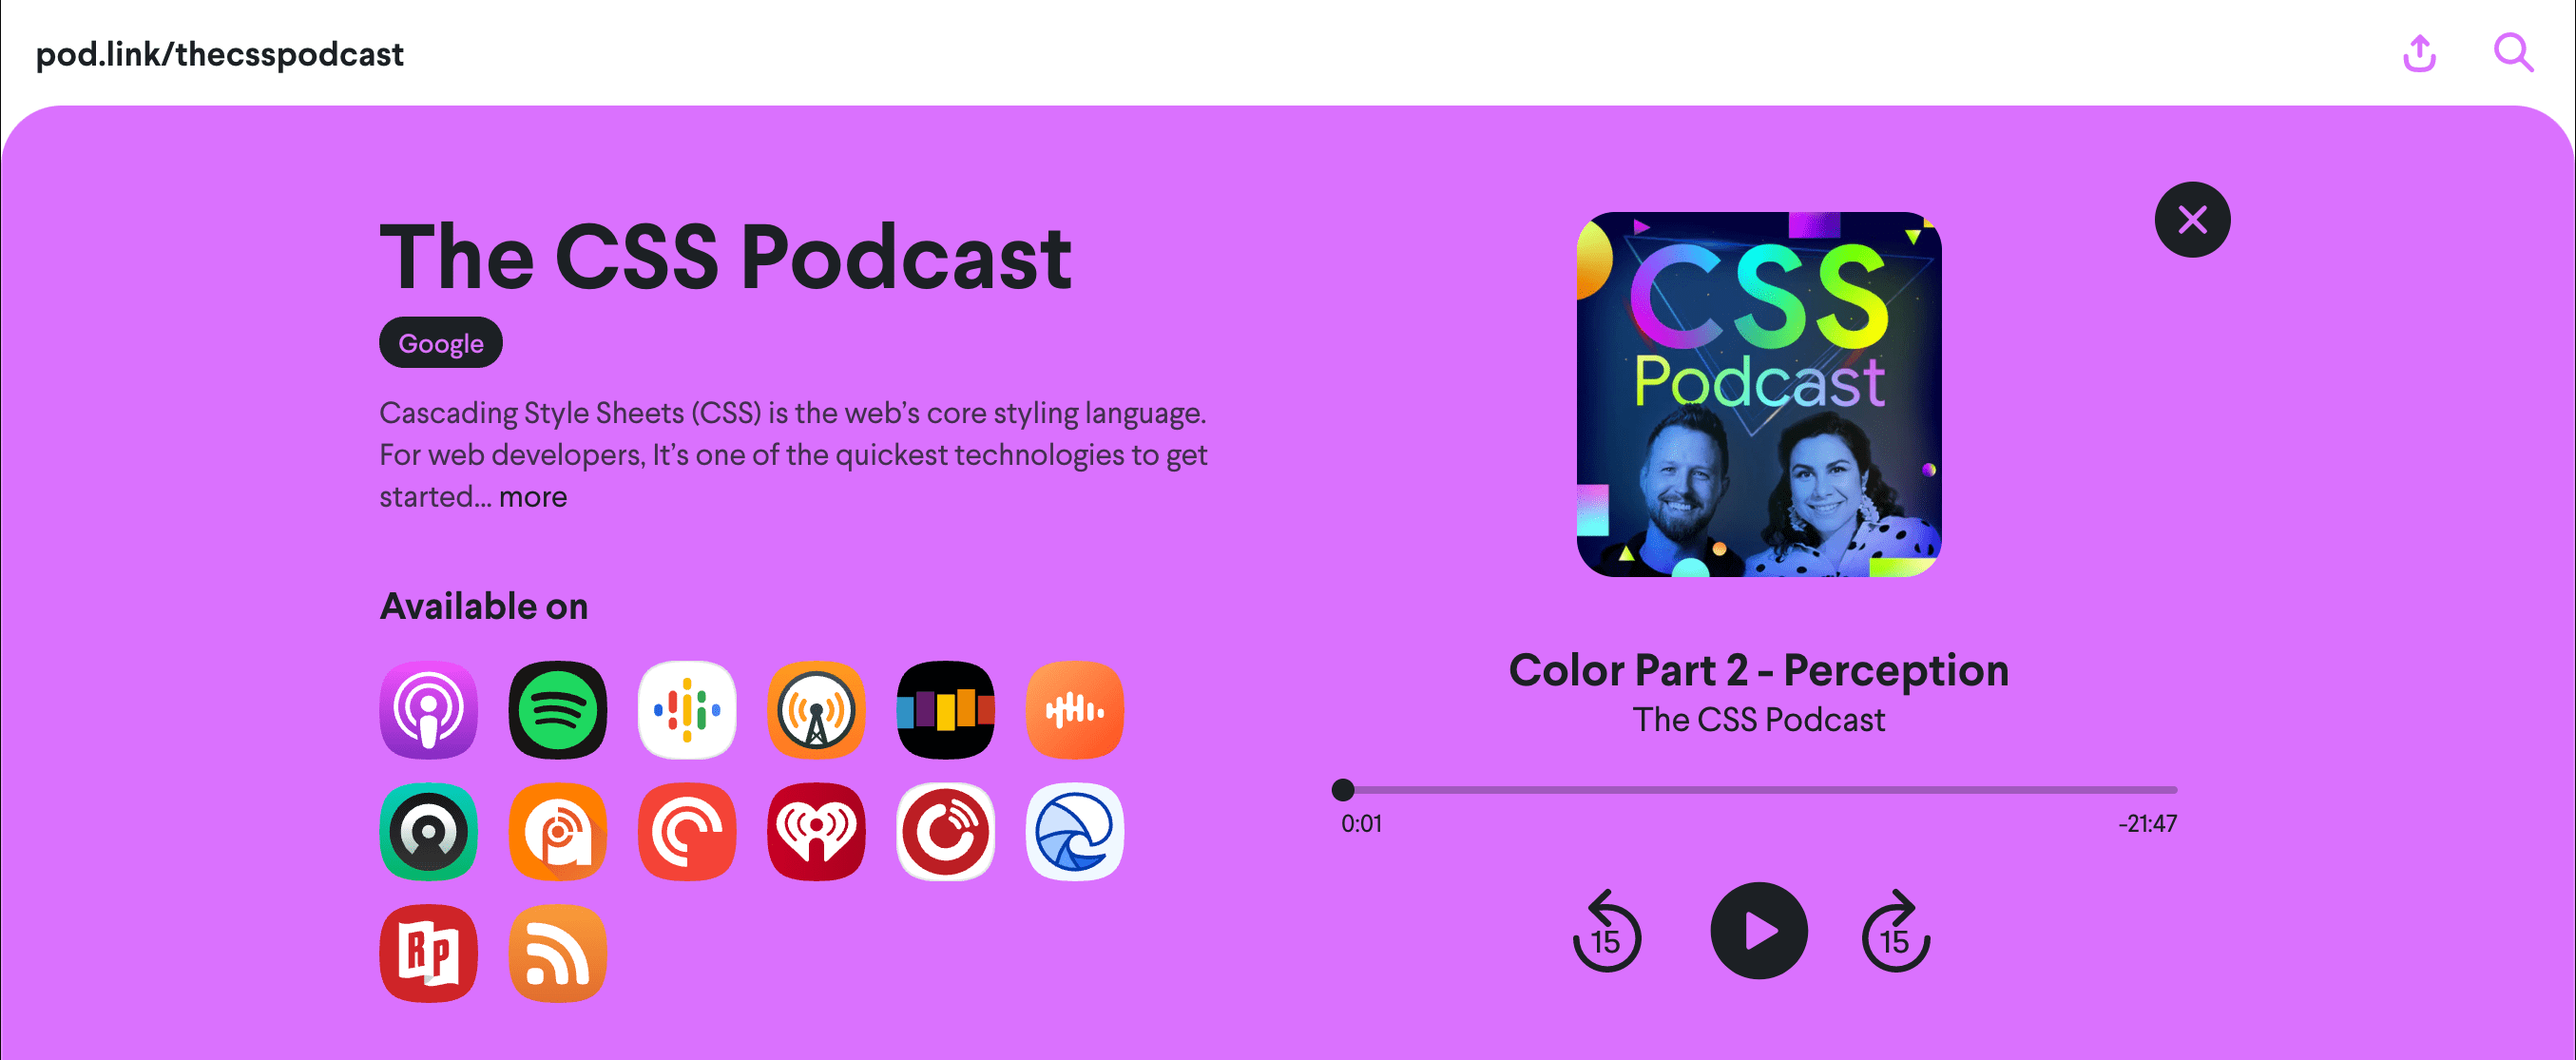 تصویری از صفحه وب pod.link/csspodcast، با قسمت Color 2: Perception کشیده شده است